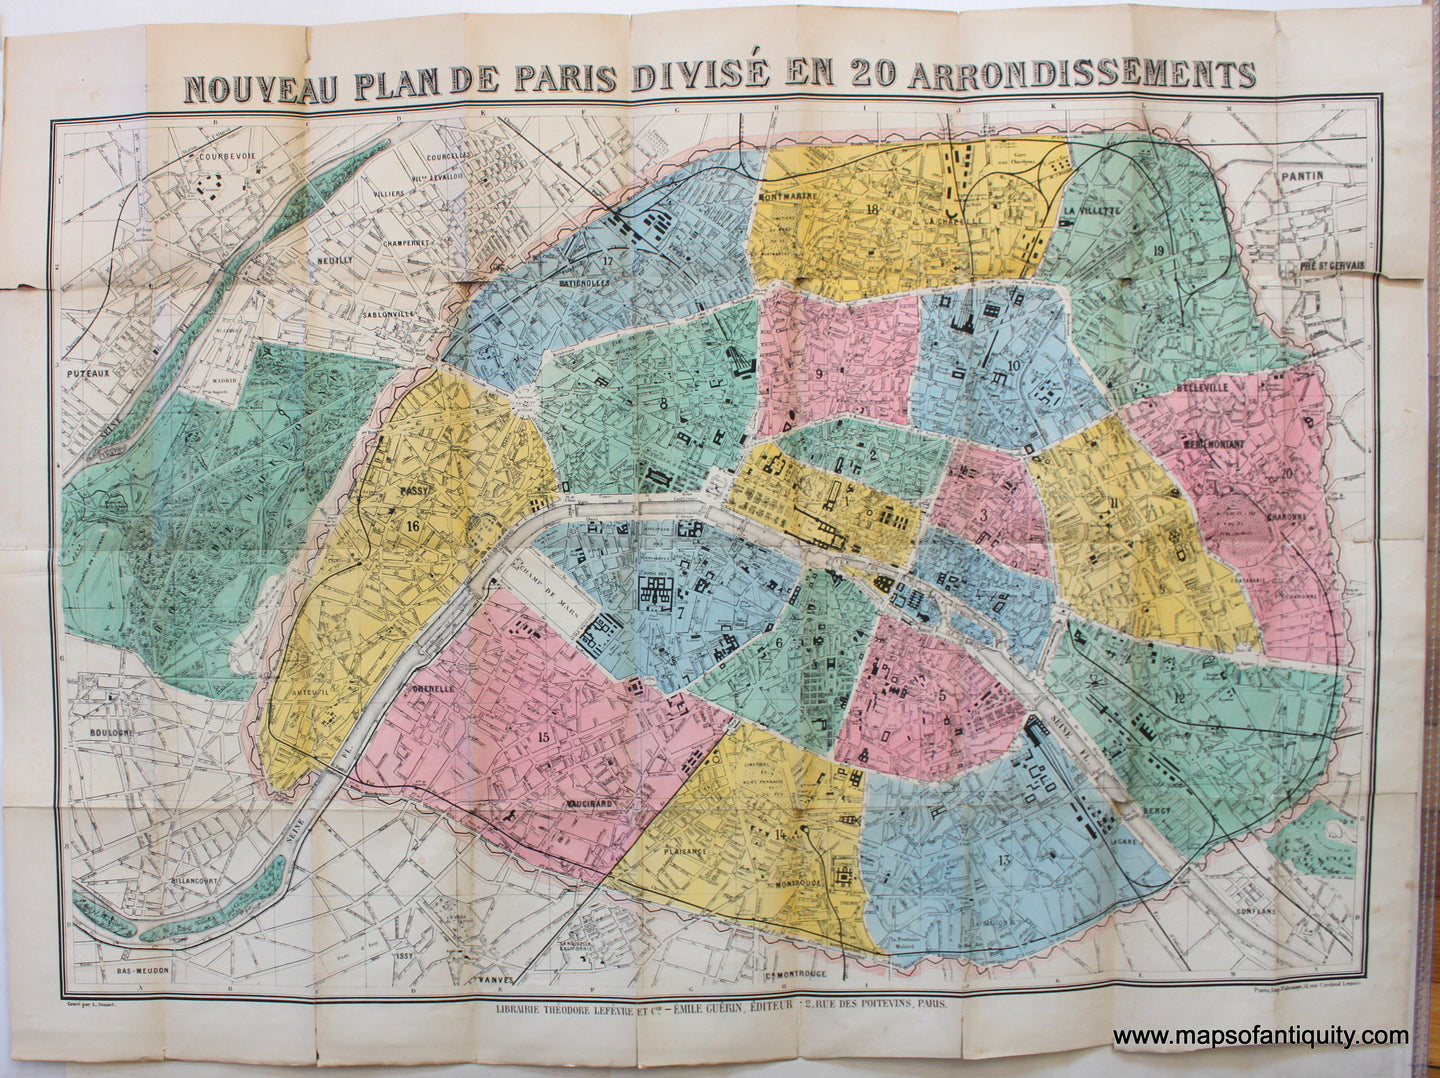 Antique-Map-Environs-Paris-Nouveau-Plan-Divise-20-arrondissements-Guerin-Lefevre-Falconer-1890s-1800s-19th-century-Maps-of-Antiquity